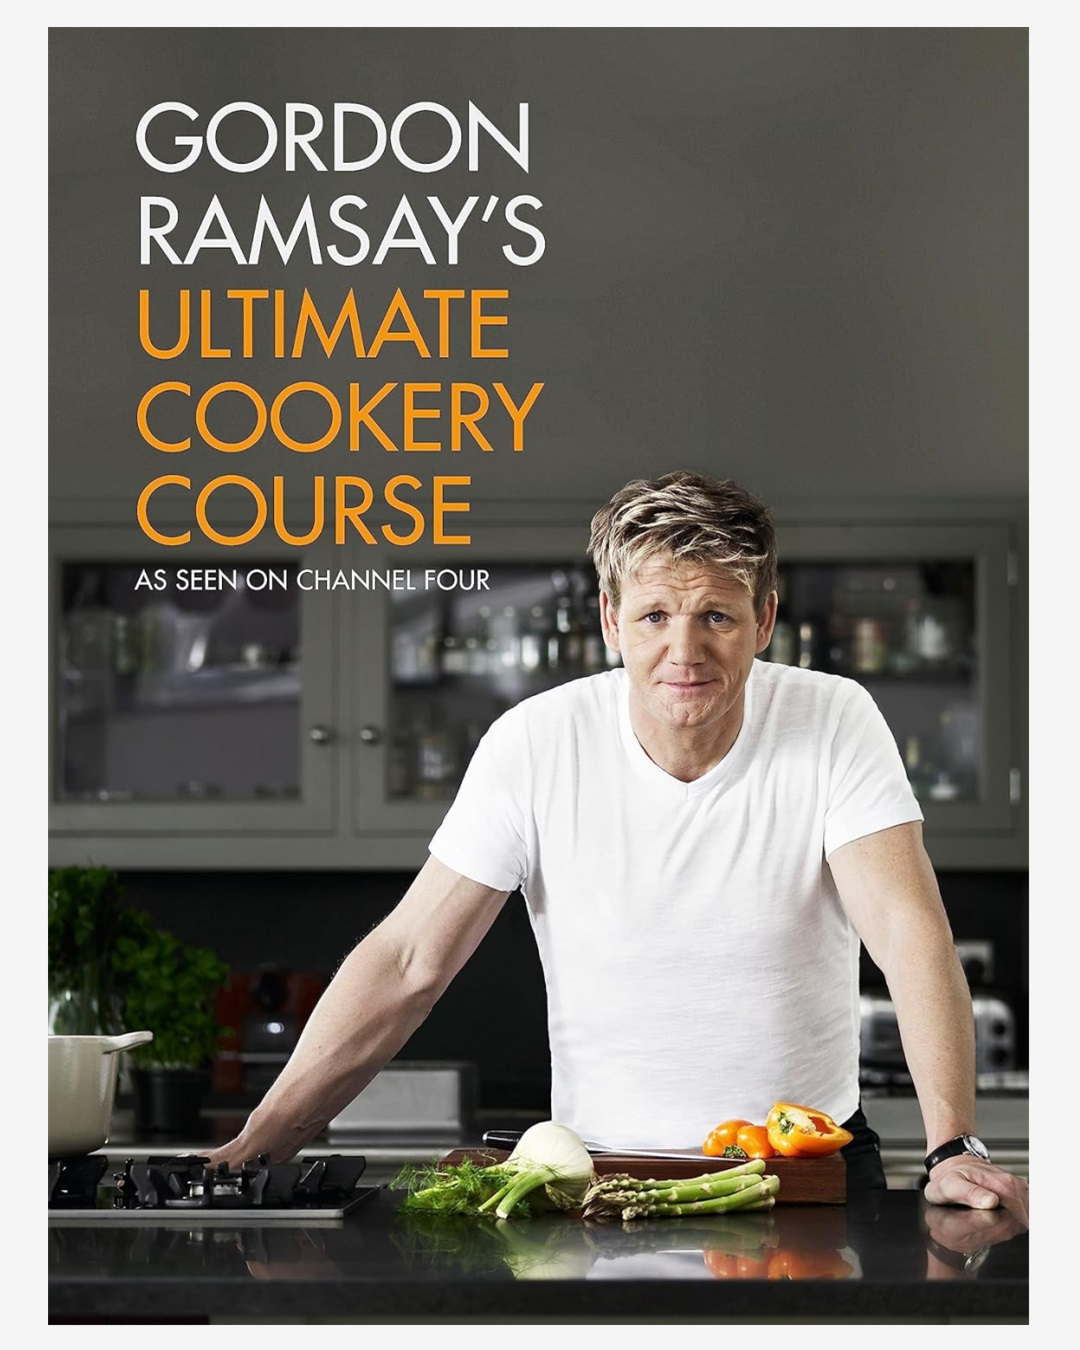 Gordon Ramsay cooking course cook book